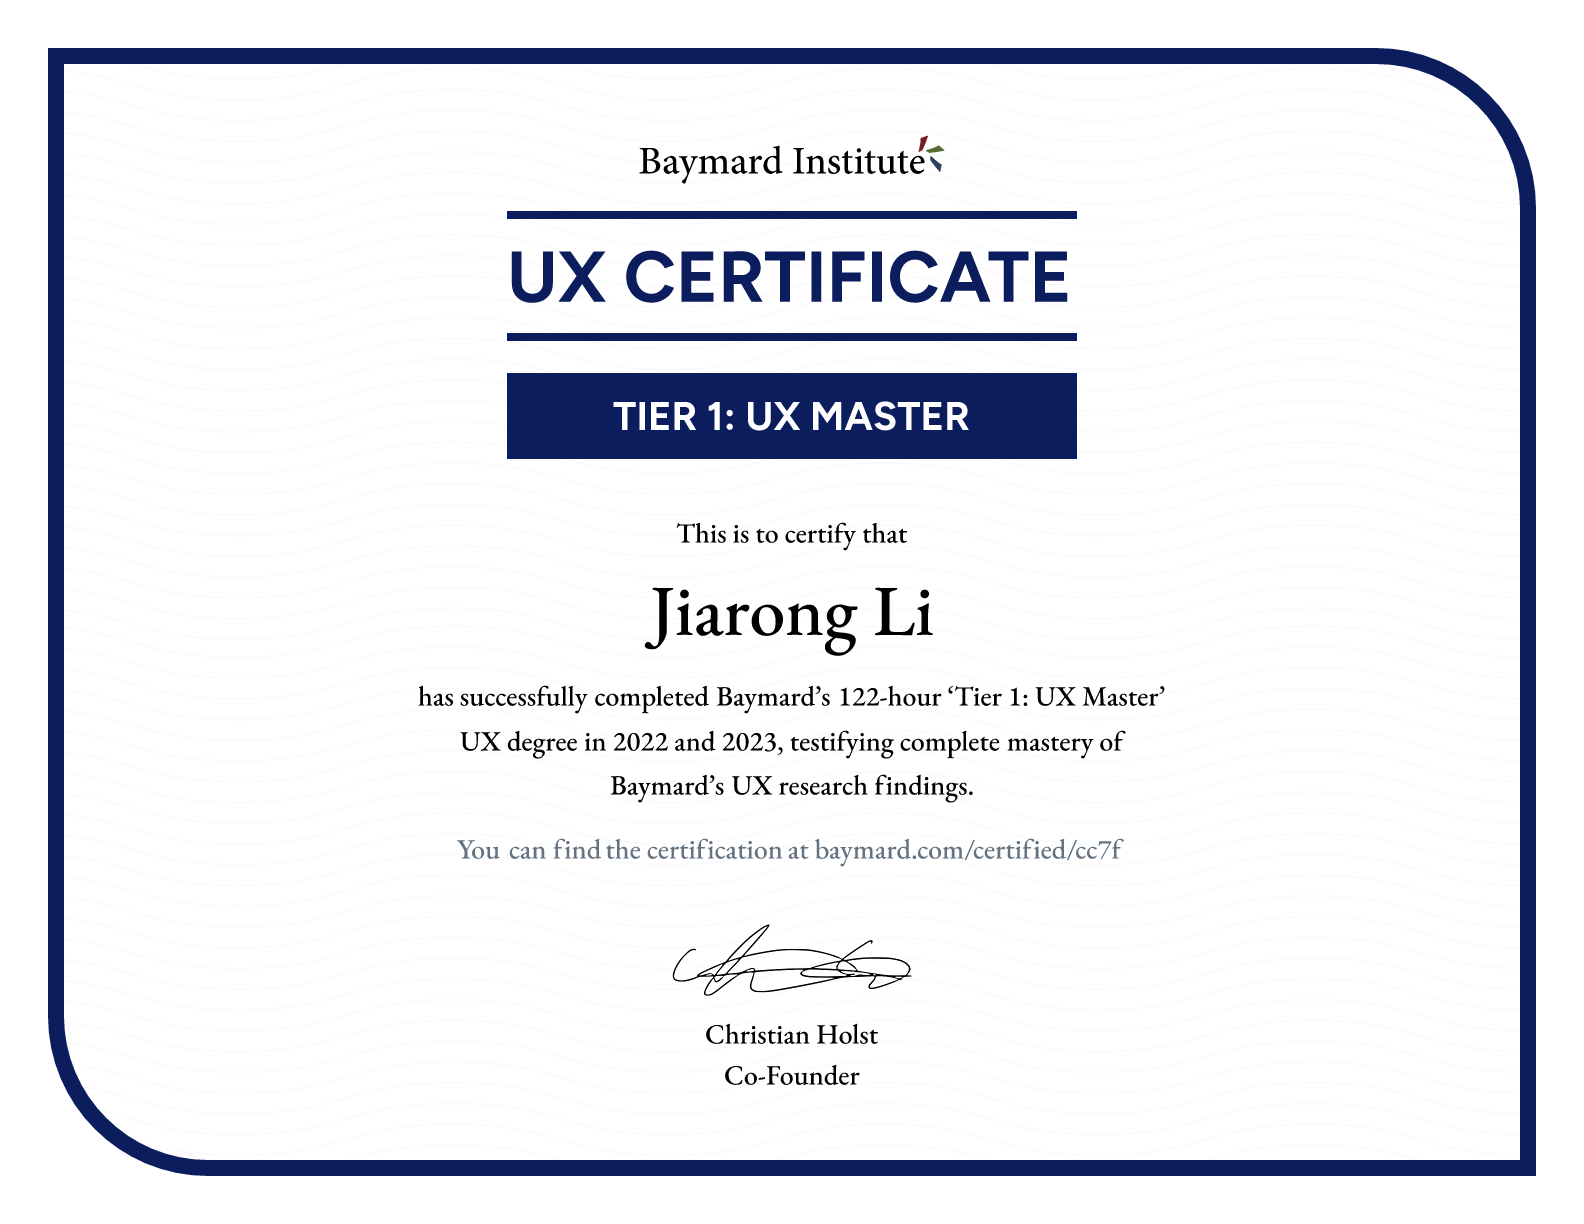 Jiarong Li’s certificate